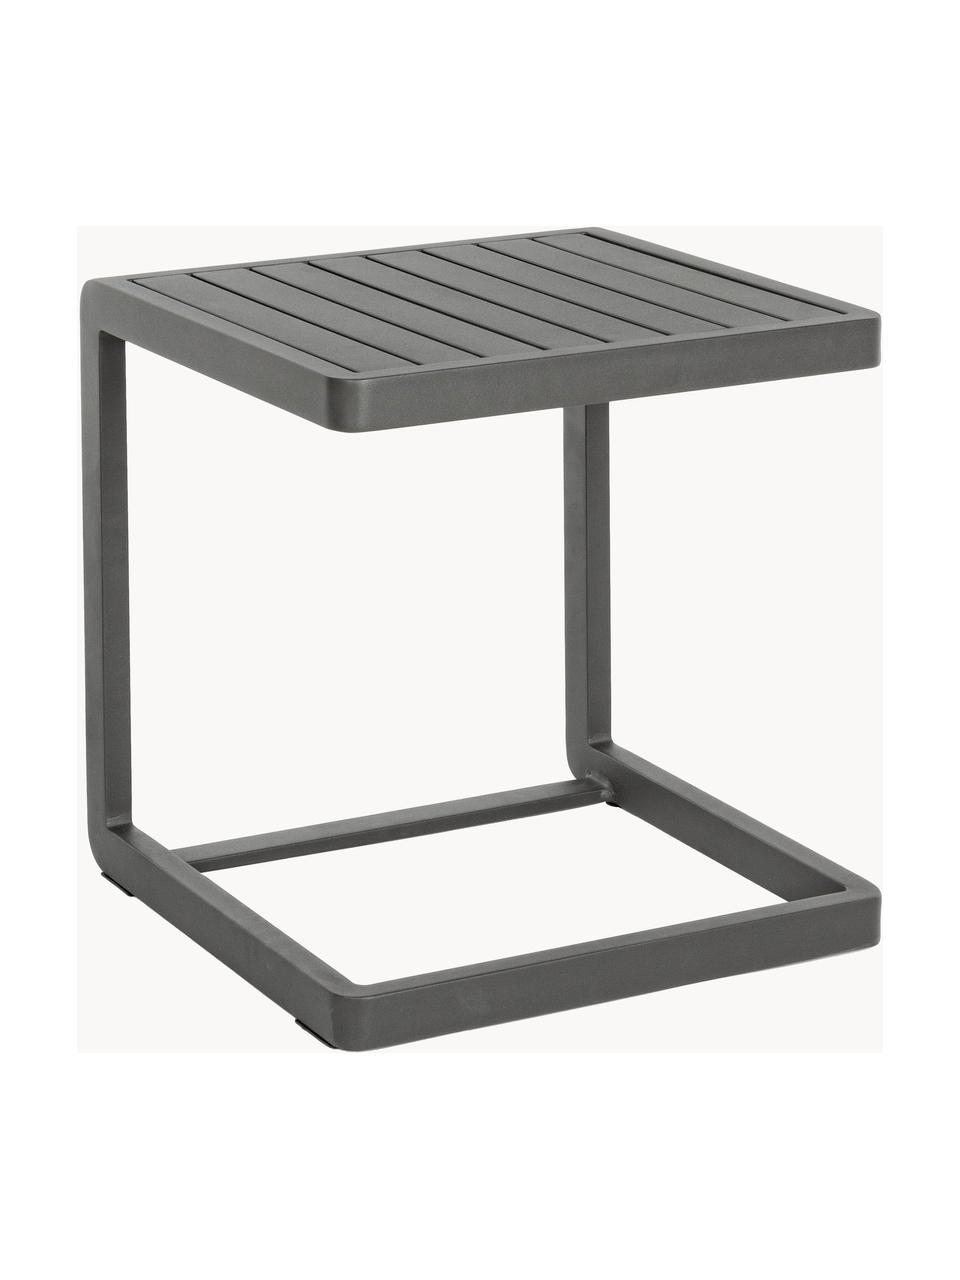 Ogrodowy stolik pomocniczy Konnor, Aluminium malowane proszkowo, Antracytowy, matowy, S 45 x W 45 cm